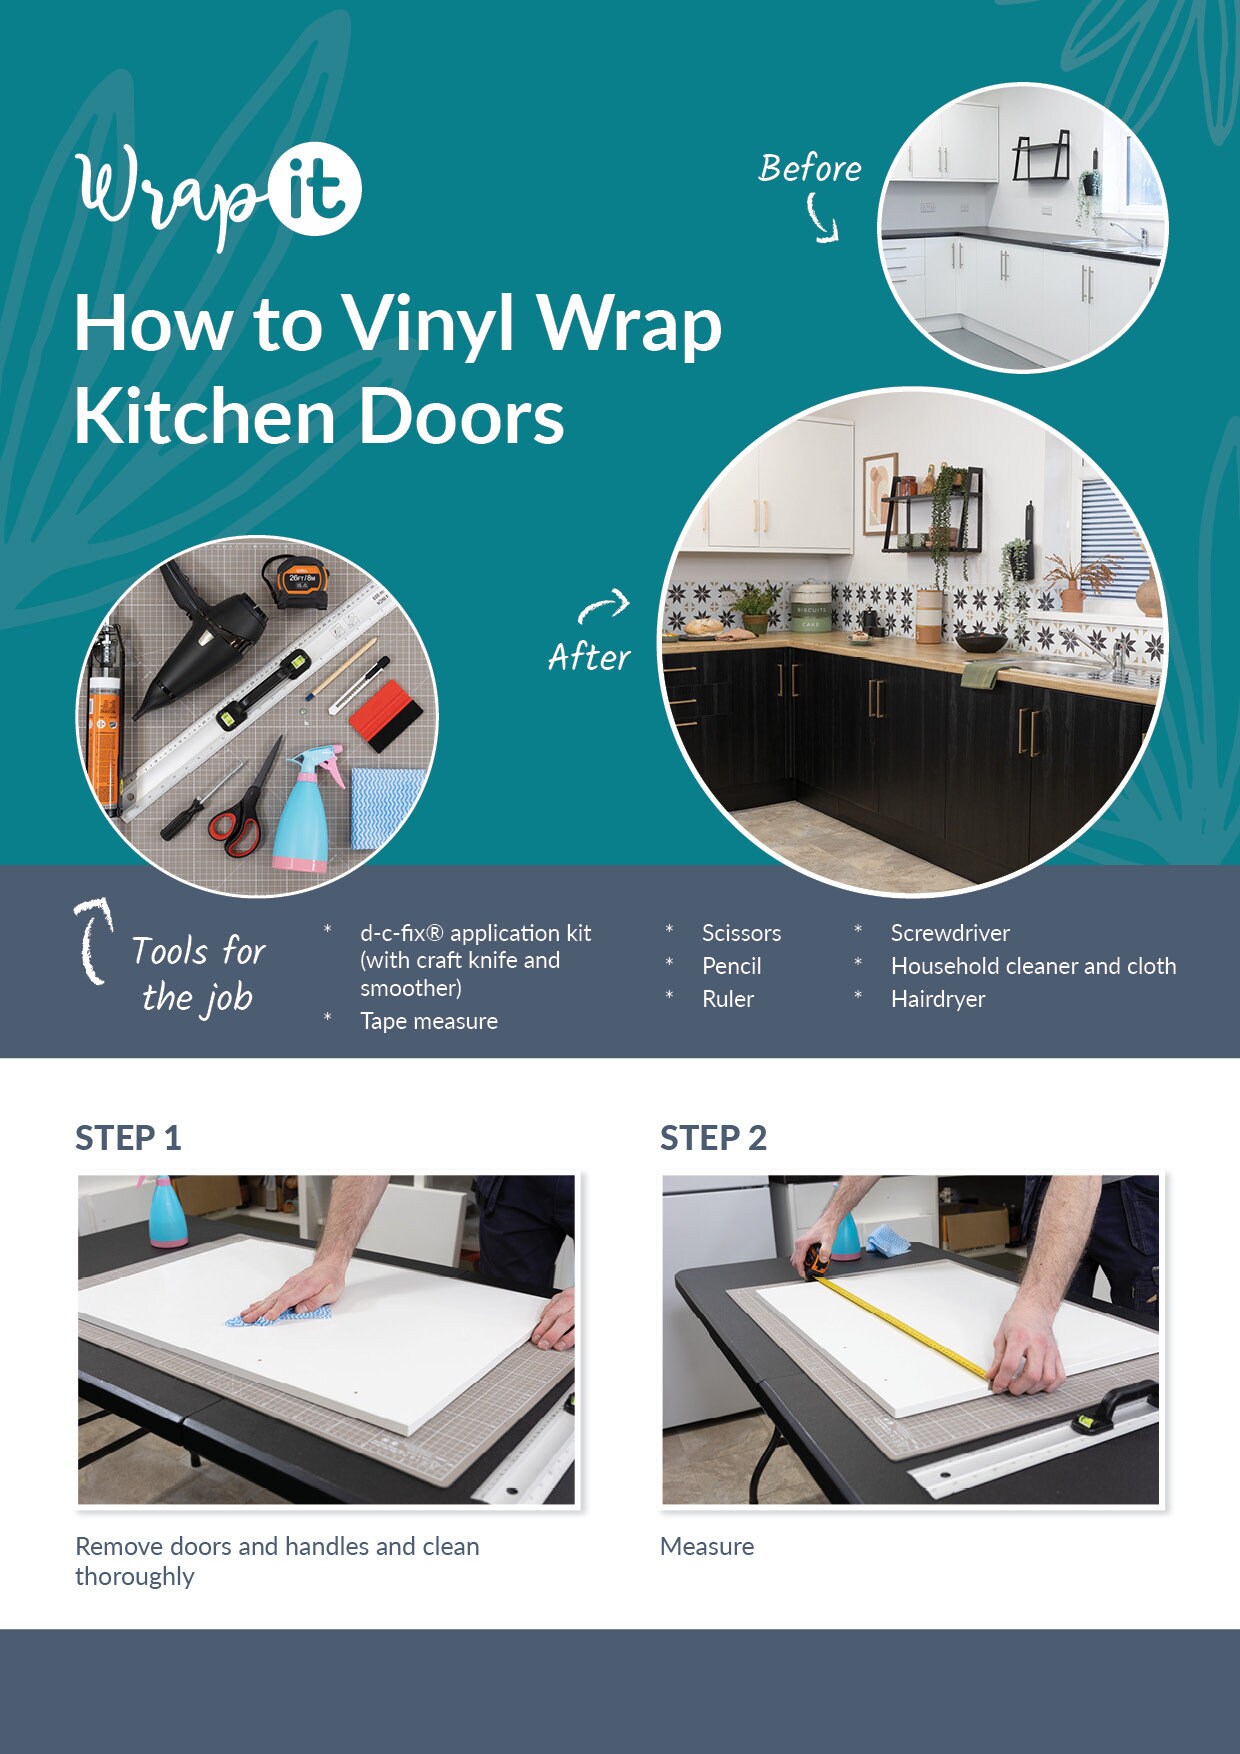 How to Vinyl Wrap Kitchen Doors